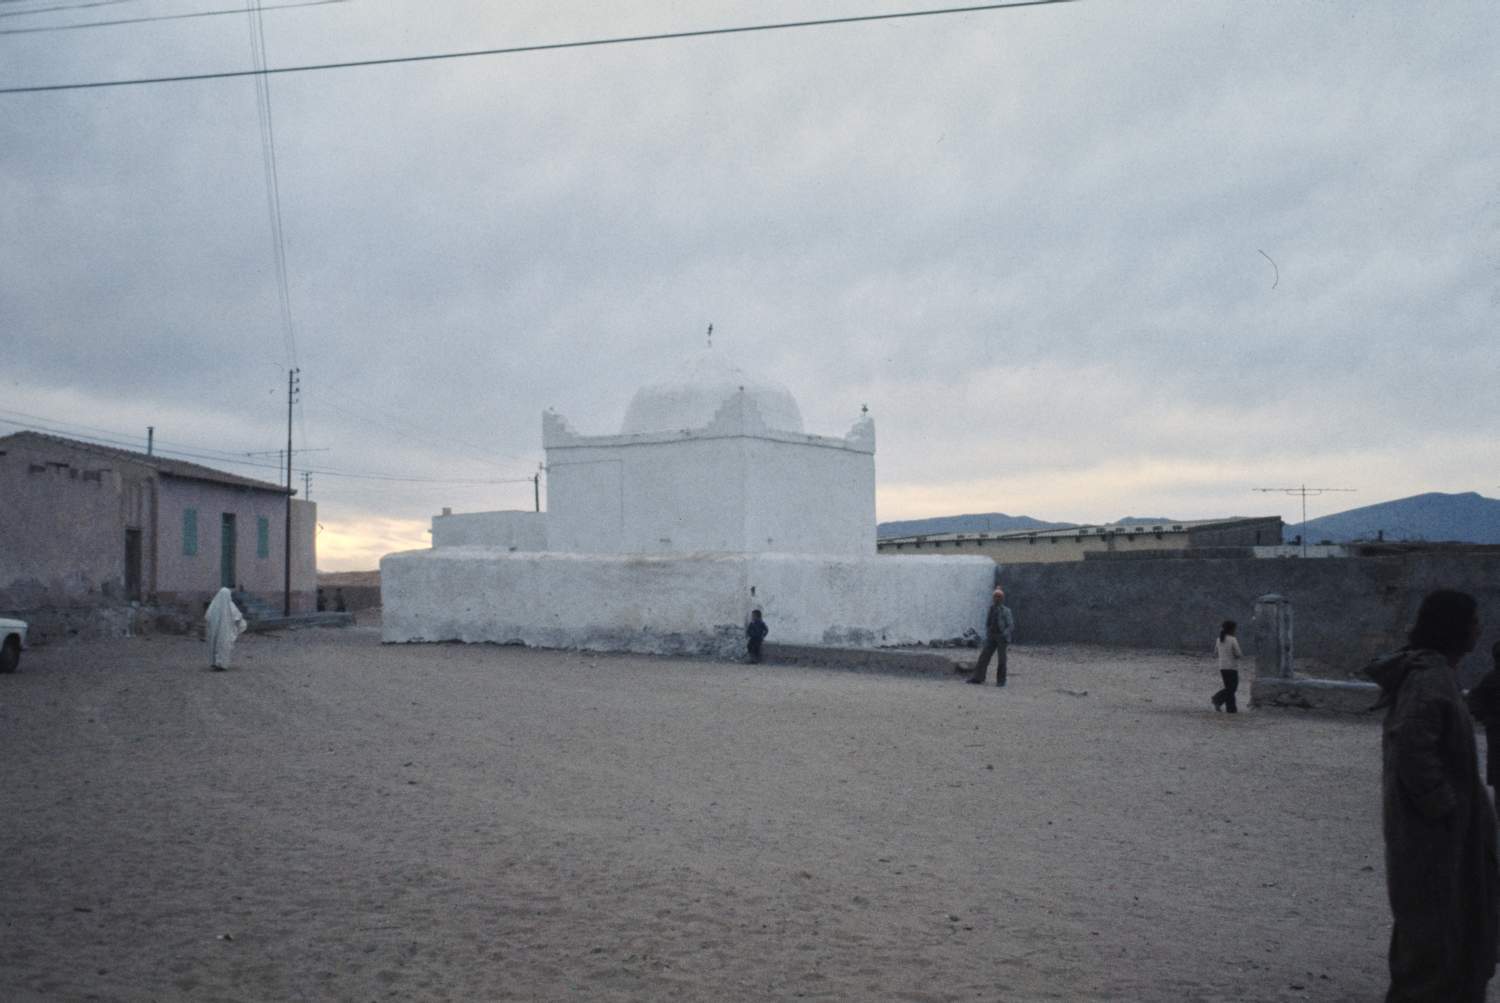 View toward the tomb of Sidi Boutkhil